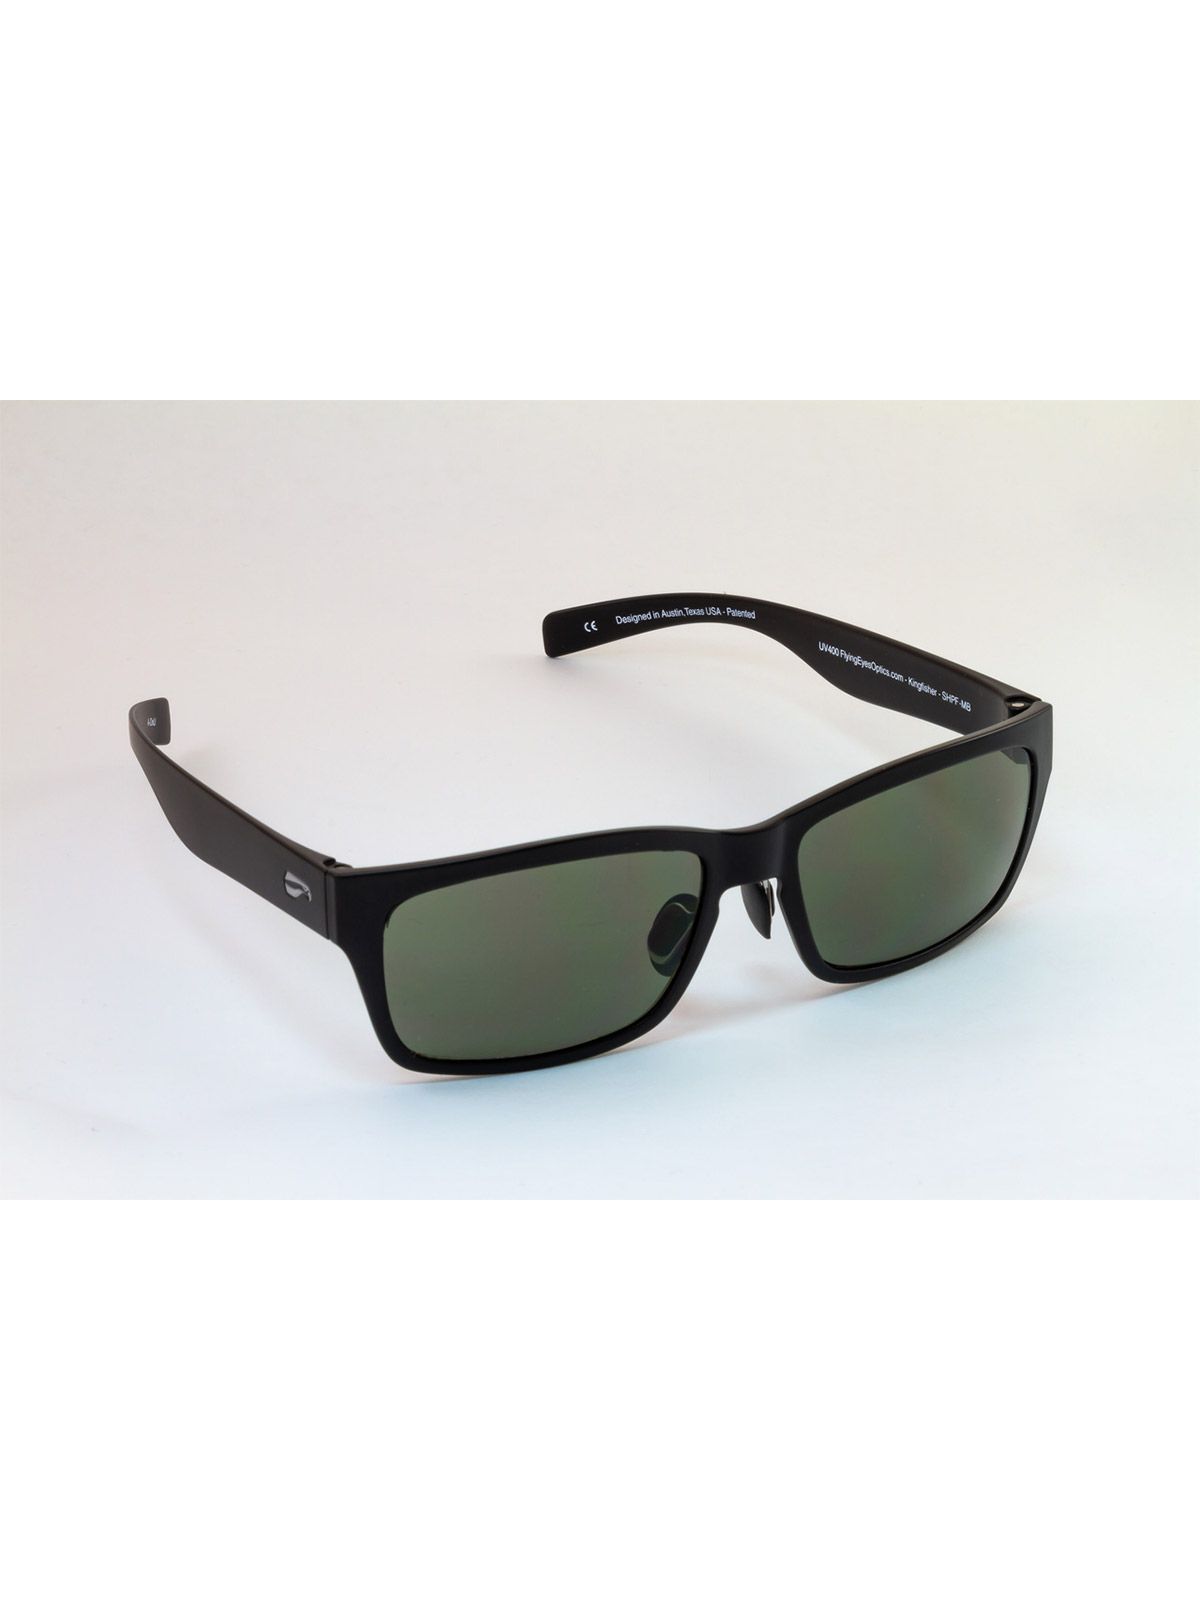 Flying Eyes Sonnenbrille Kingfisher - Rahmen schwarz glänzend, Linsen G15 (neutrales Grün)